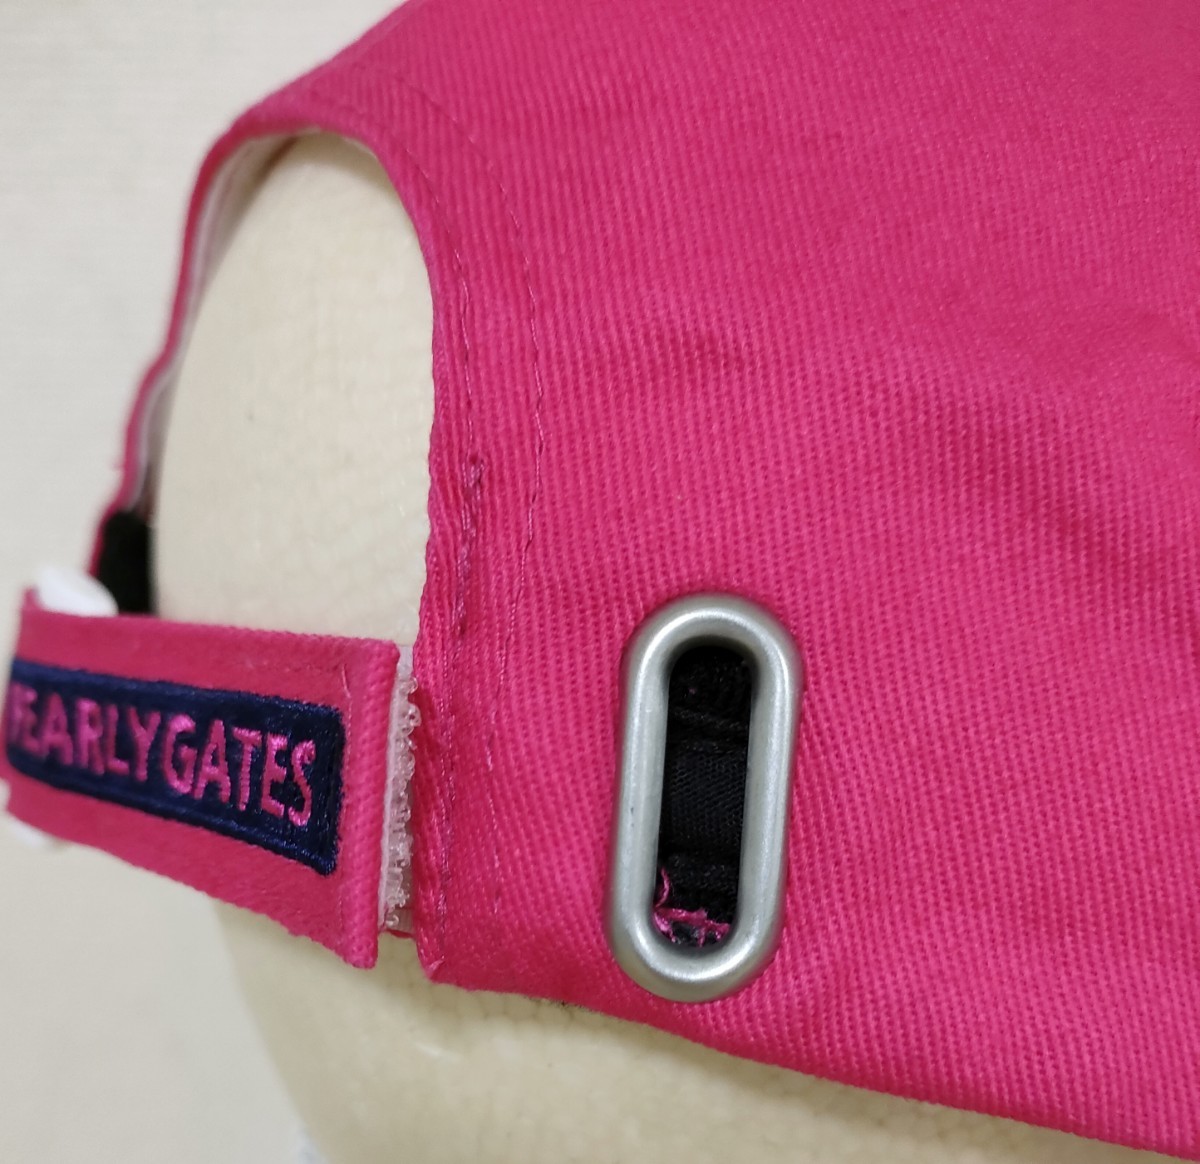 [ новый товар ][ стандартный товар ] Pearly Gates PEARLY GATES Golf колпак мужской розовый 